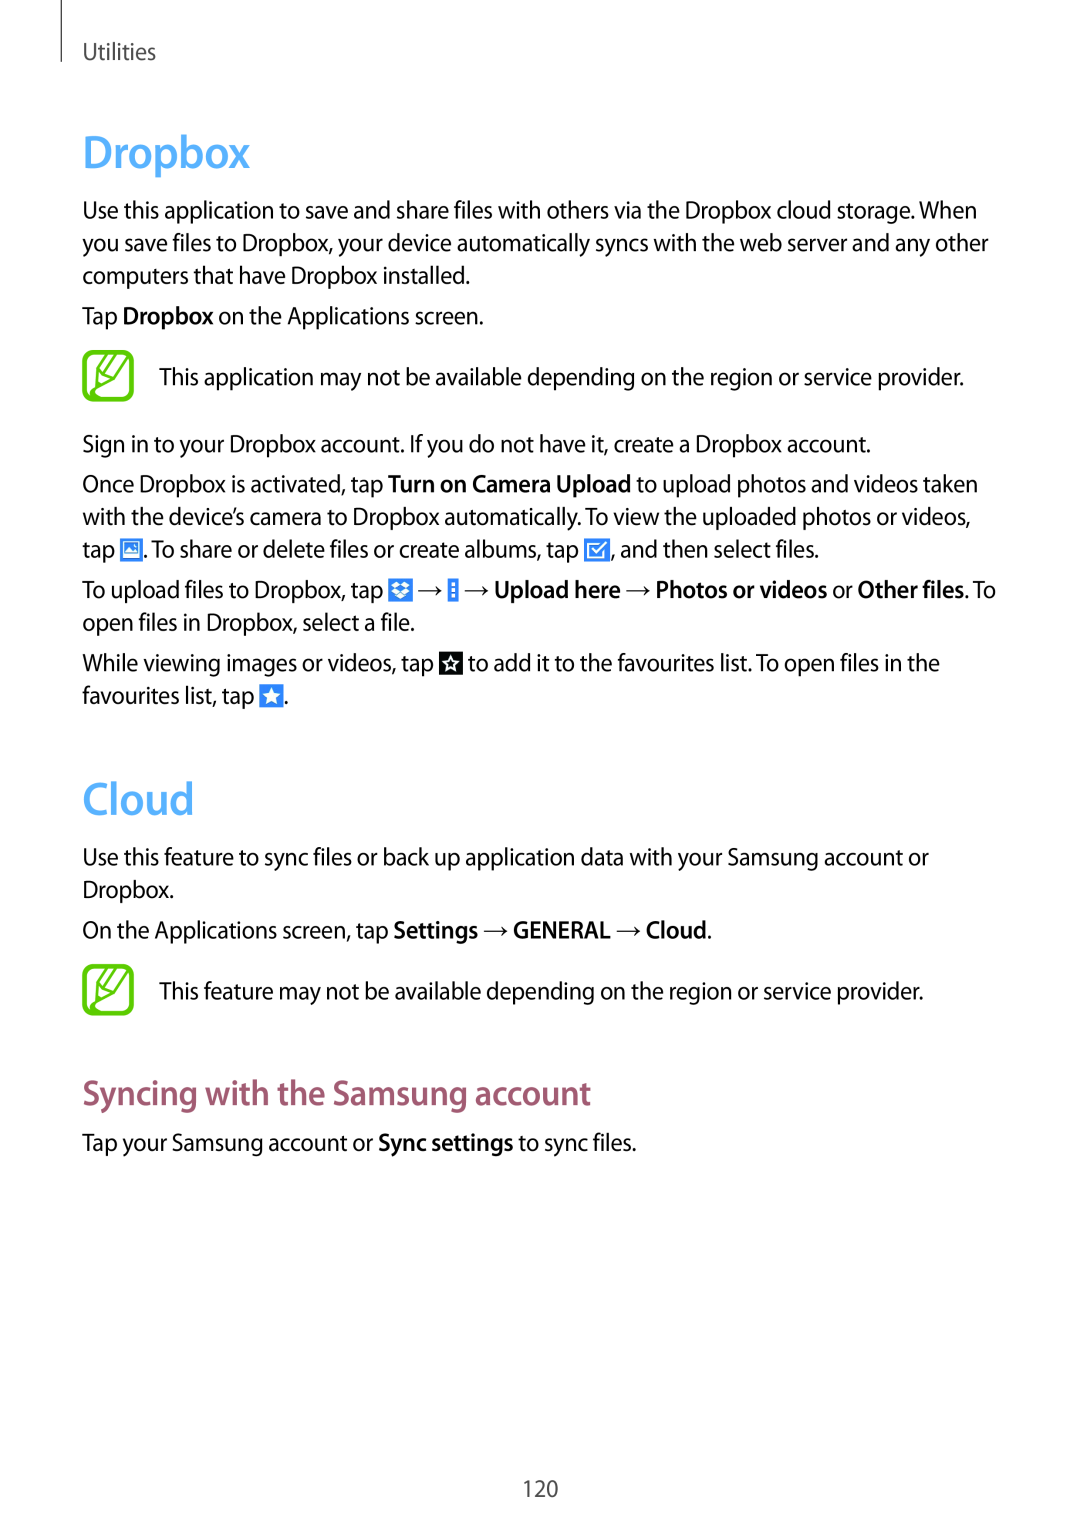 Samsung SM-P9000ZWAXEZ, SM-P9000ZWAATO, SM-P9000ZKAXEO manual Dropbox, Cloud, Syncing with the Samsung account, Utilities 